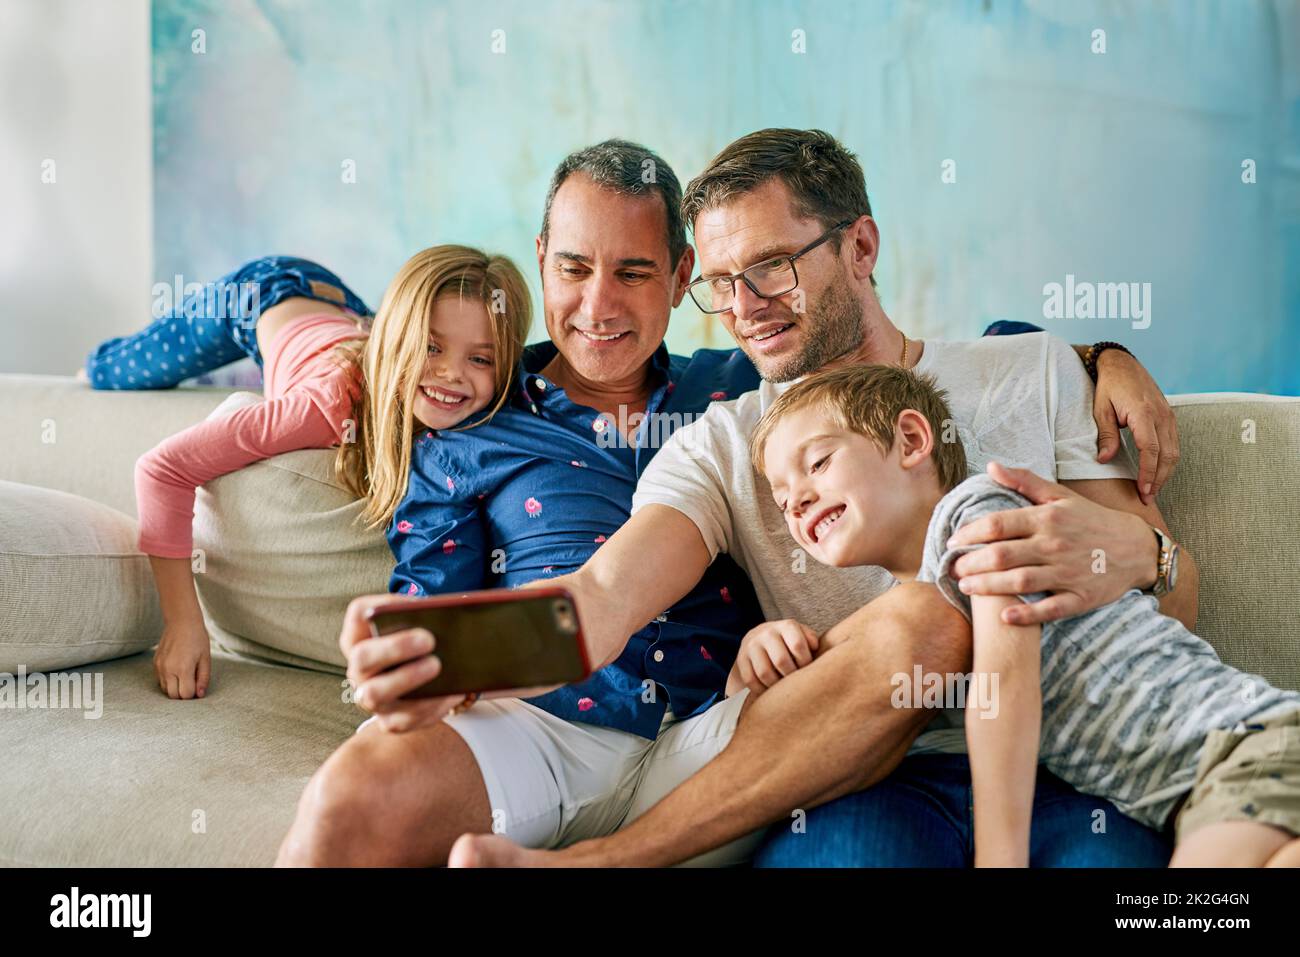 Entrer ici, ont pris un selfie. Photo courte d'une famille affectueuse de quatre personnes prenant des selfies sur le canapé à la maison. Banque D'Images